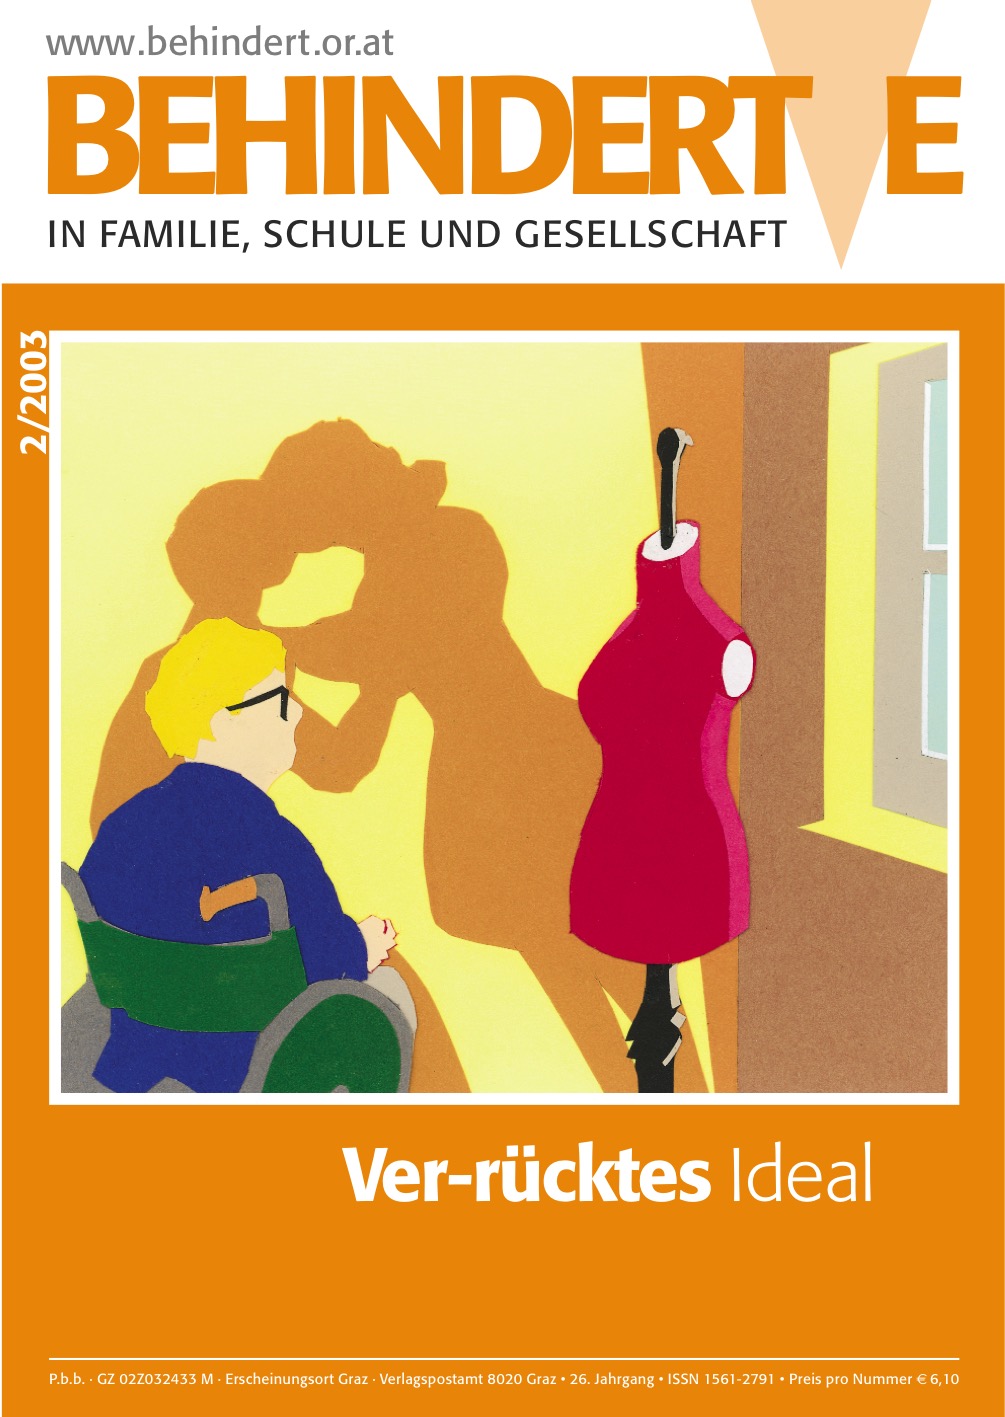 Titelbild der Zeitschrift BEHINDERTE MENSCHEN, Ausgabe 2/2003 "Ver-rücktes Ideal"